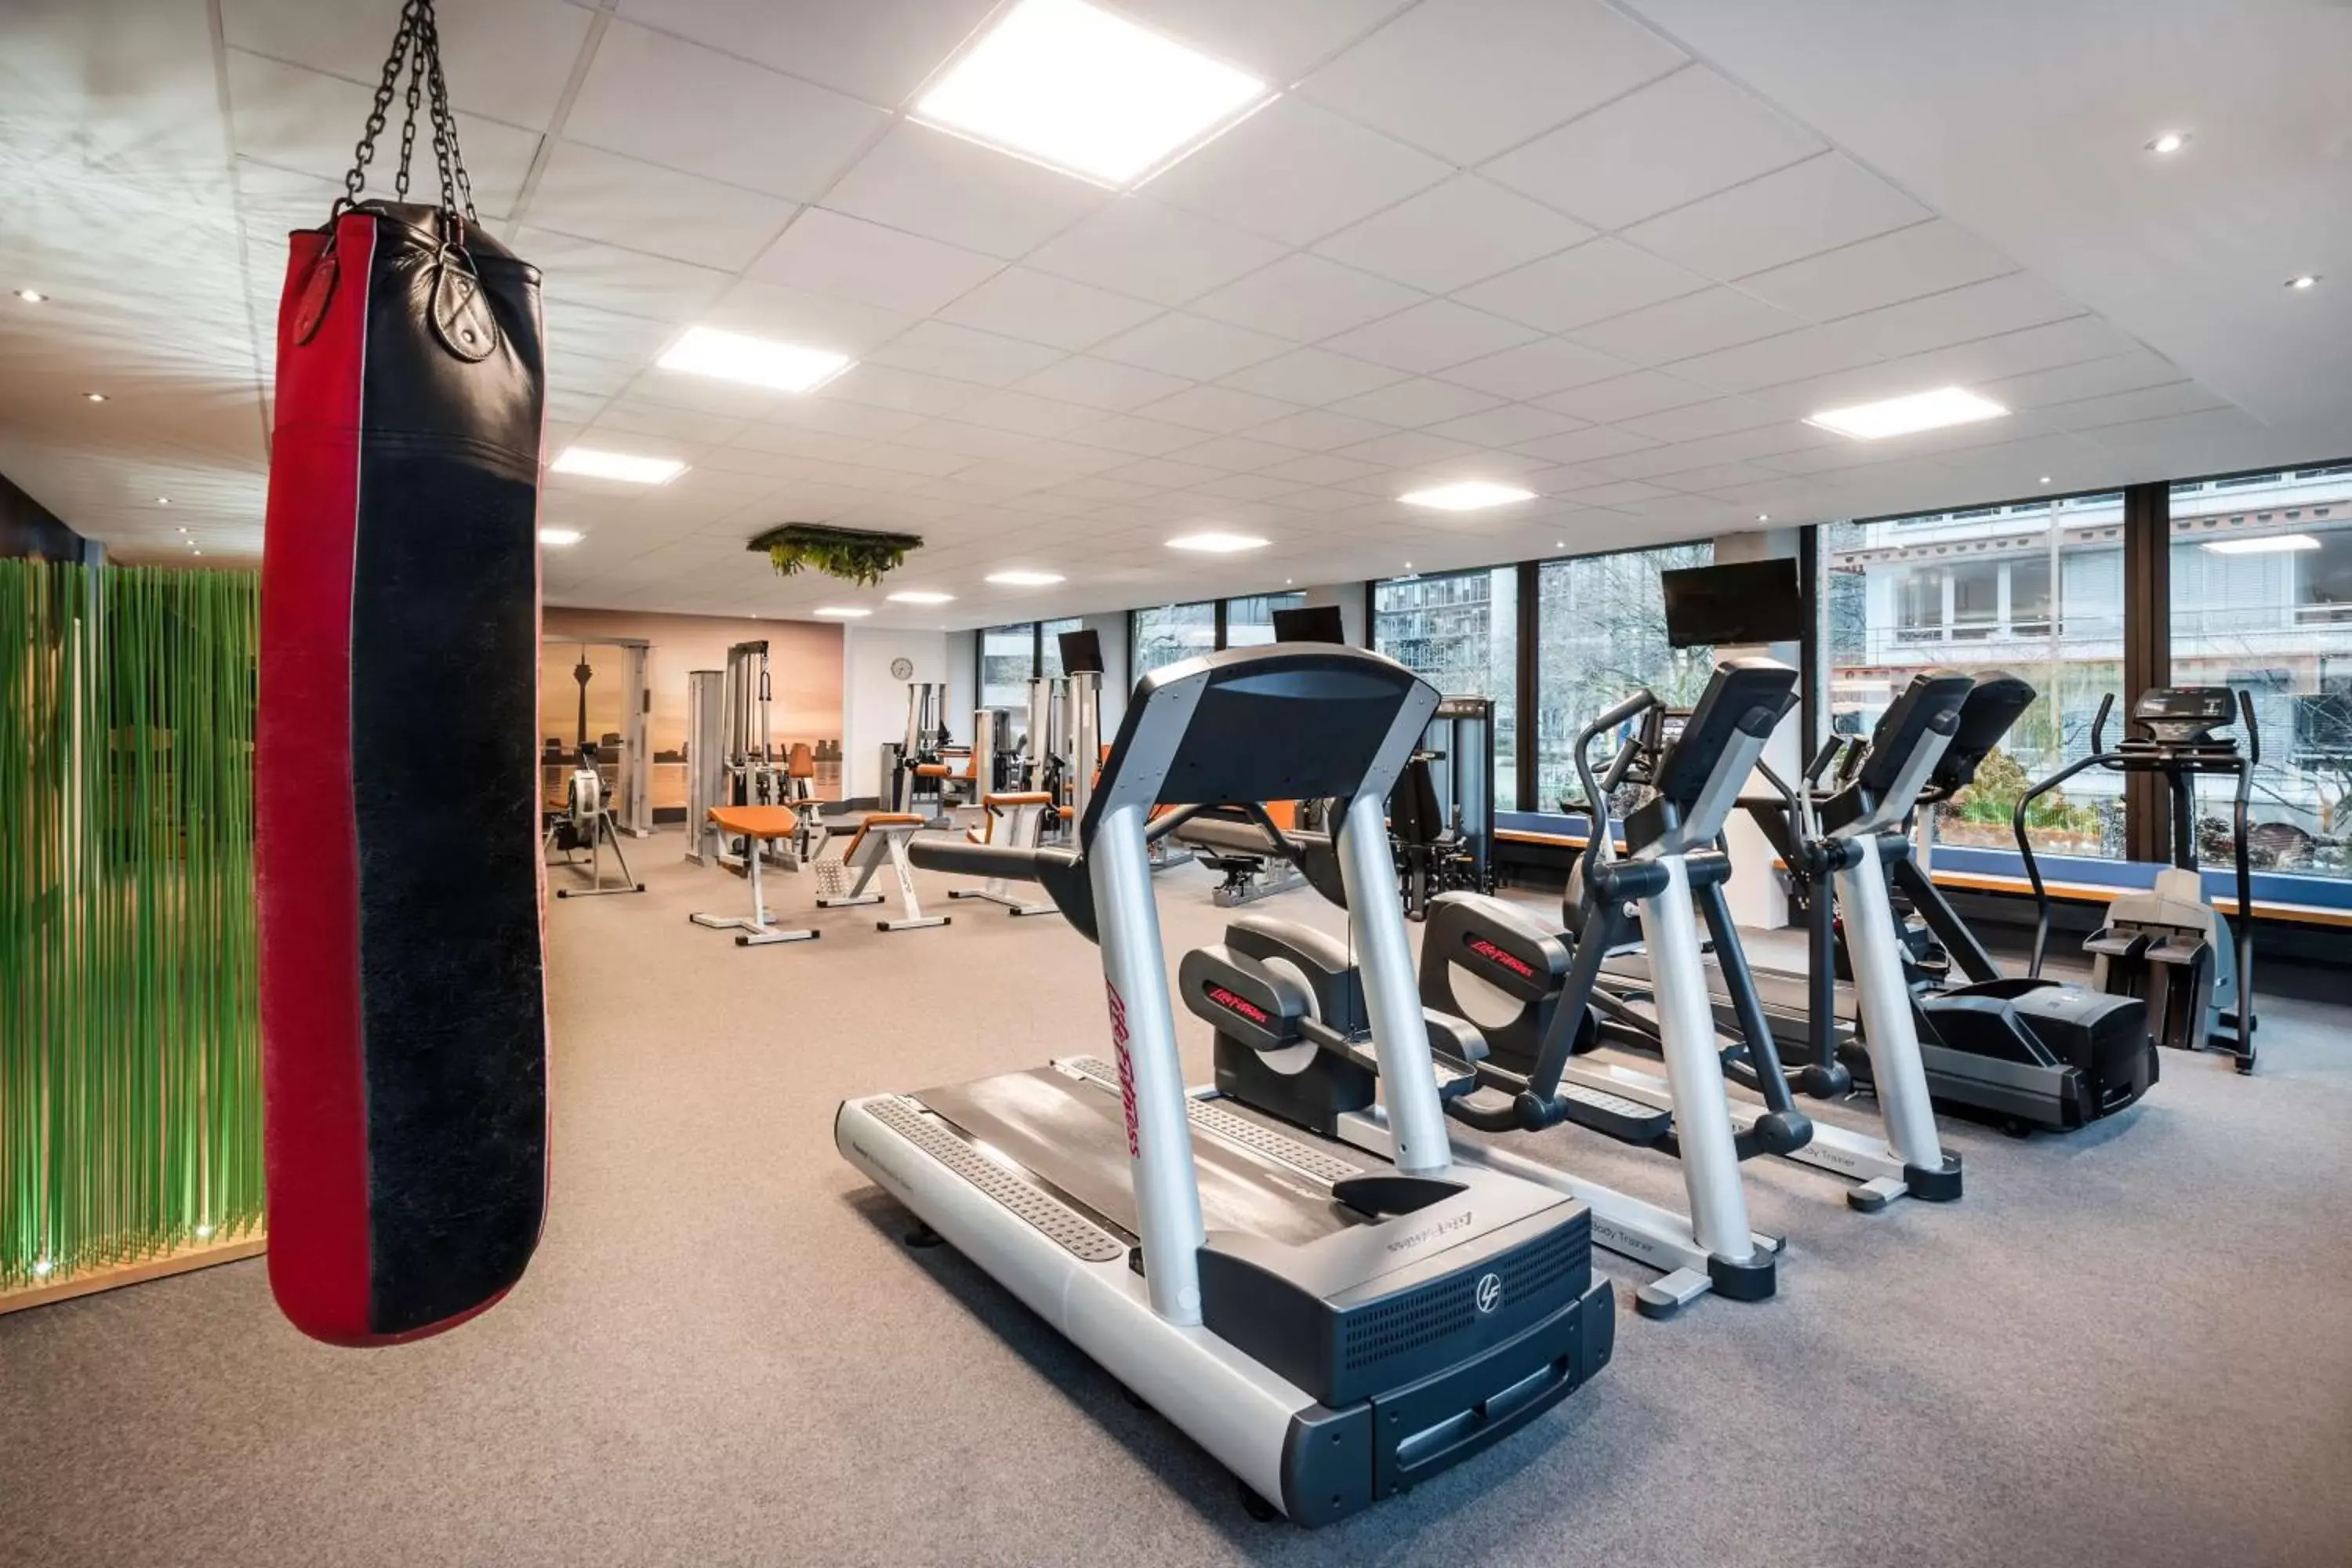 Fitness centre/facilities, Fitness Center/Facilities in Lindner Hotel Dusseldorf Seestern, part of JdV by Hyatt